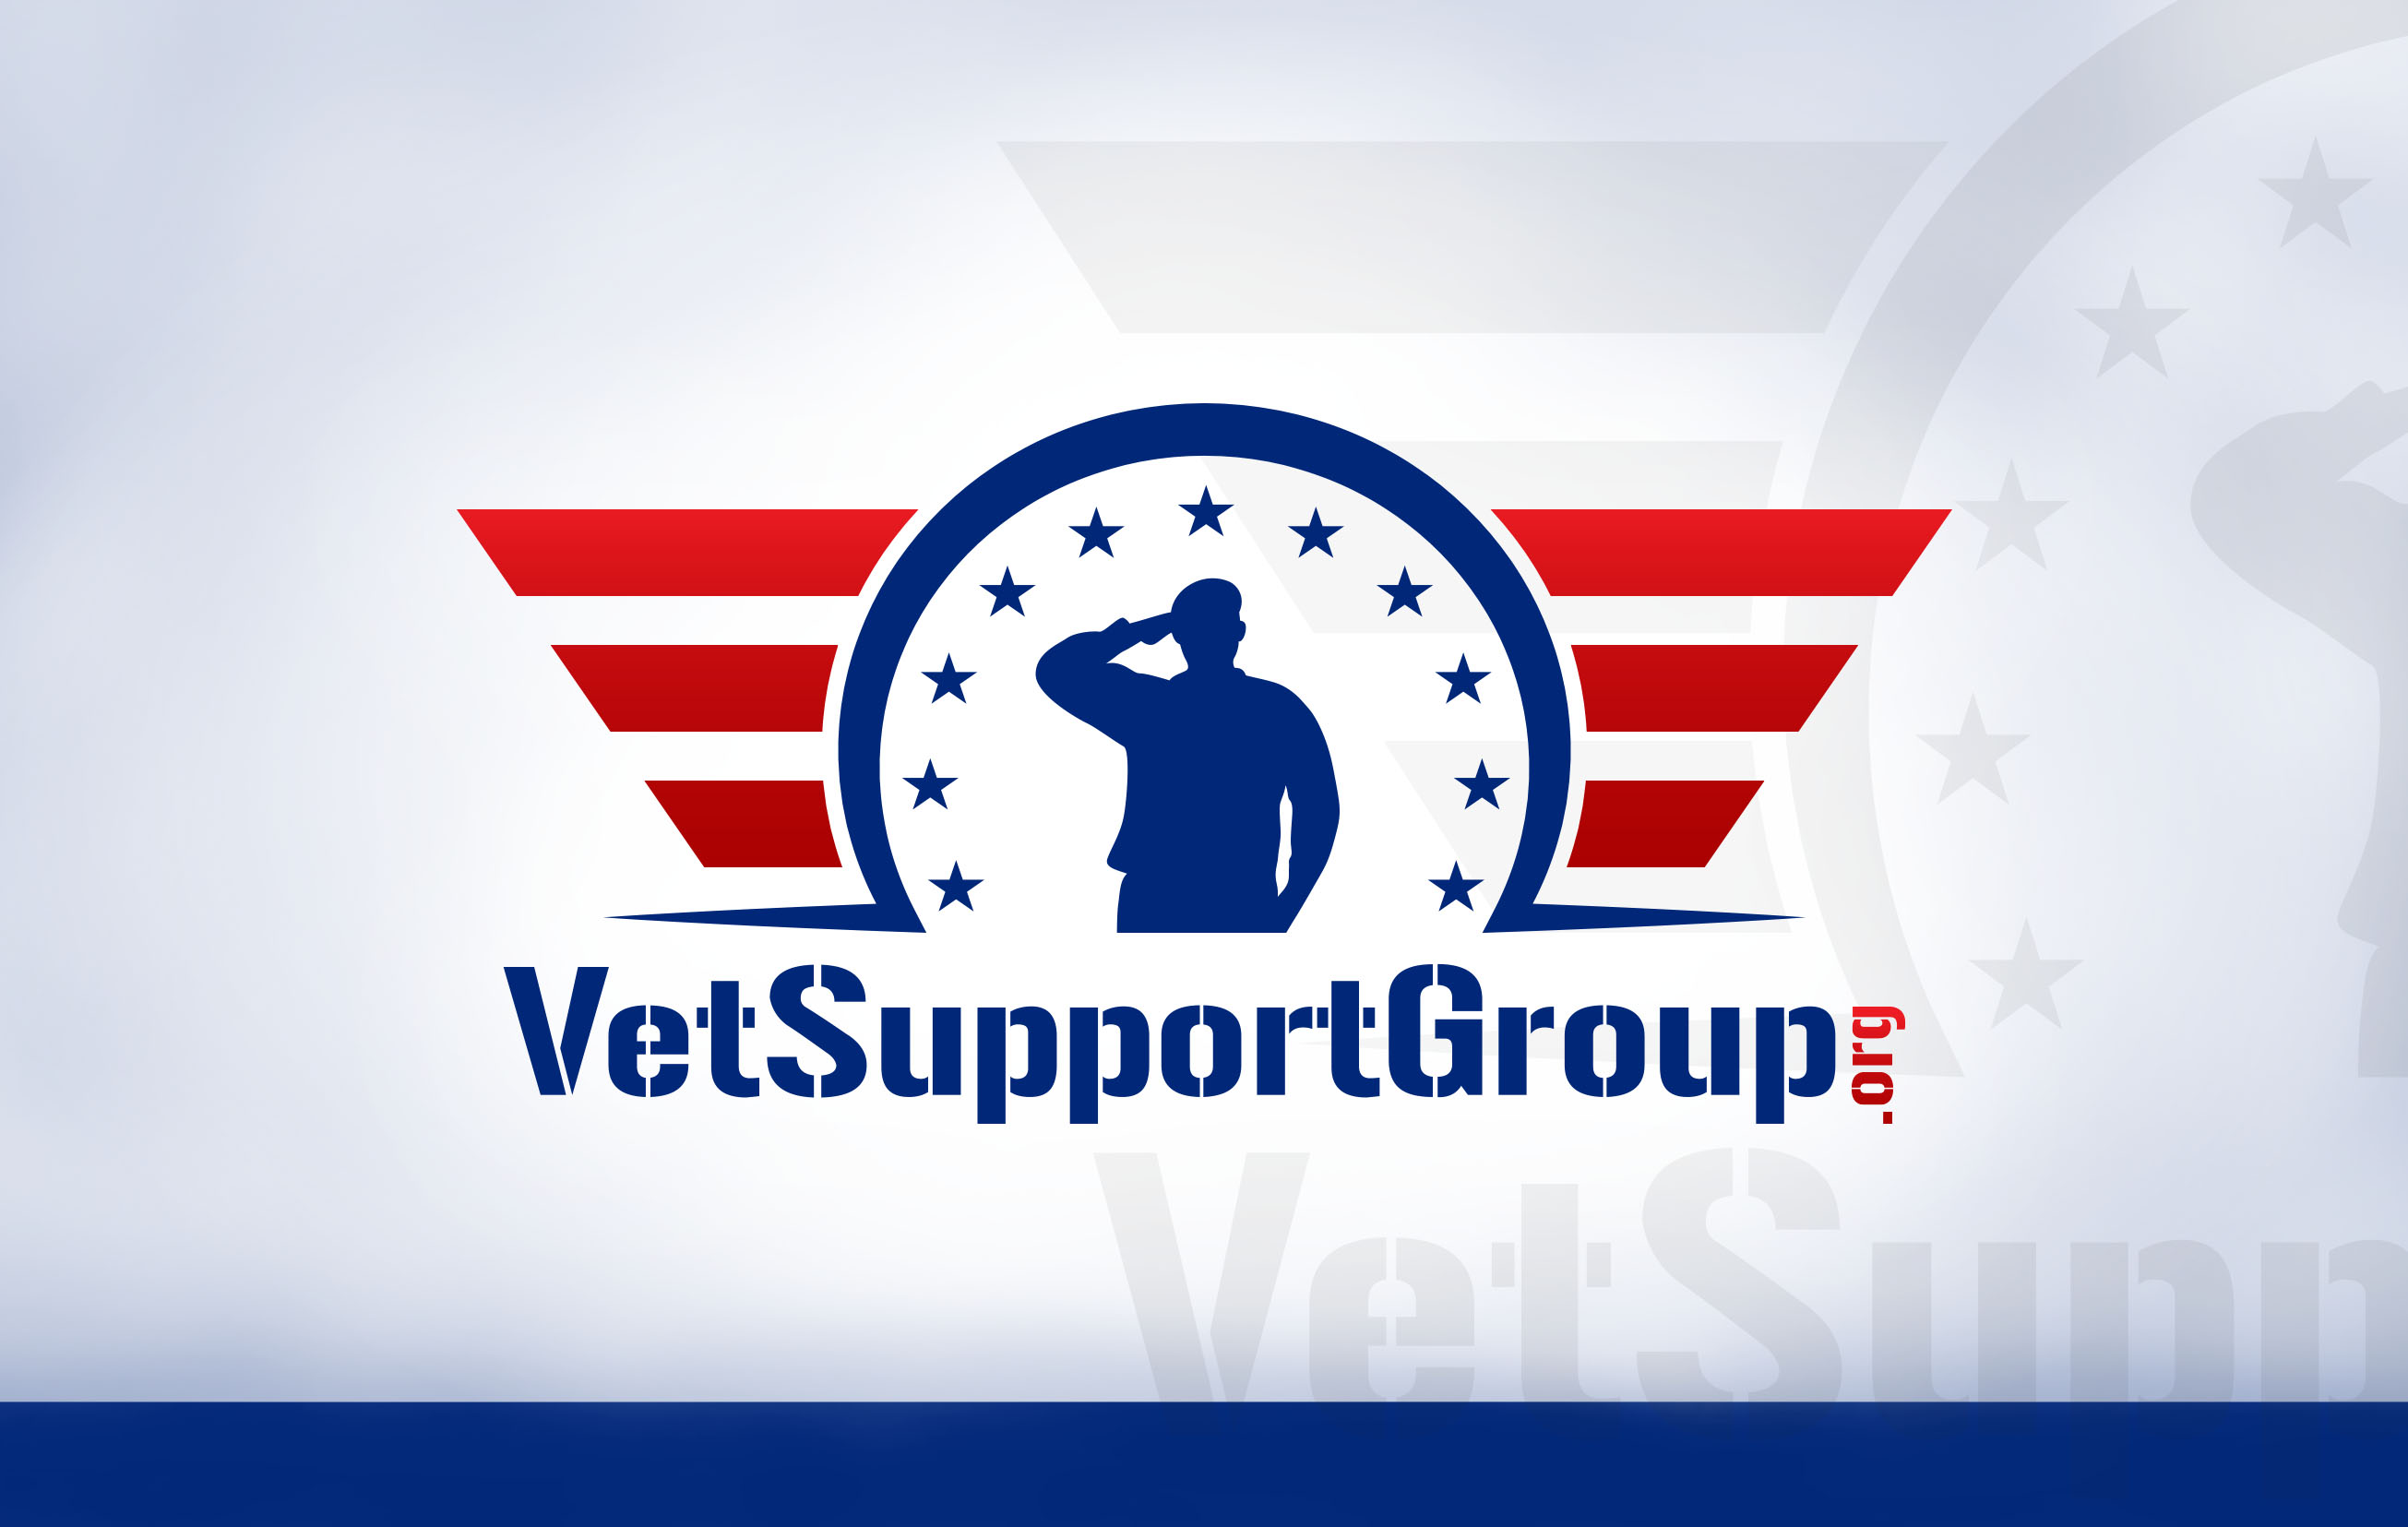 Vet Support Group Design #1